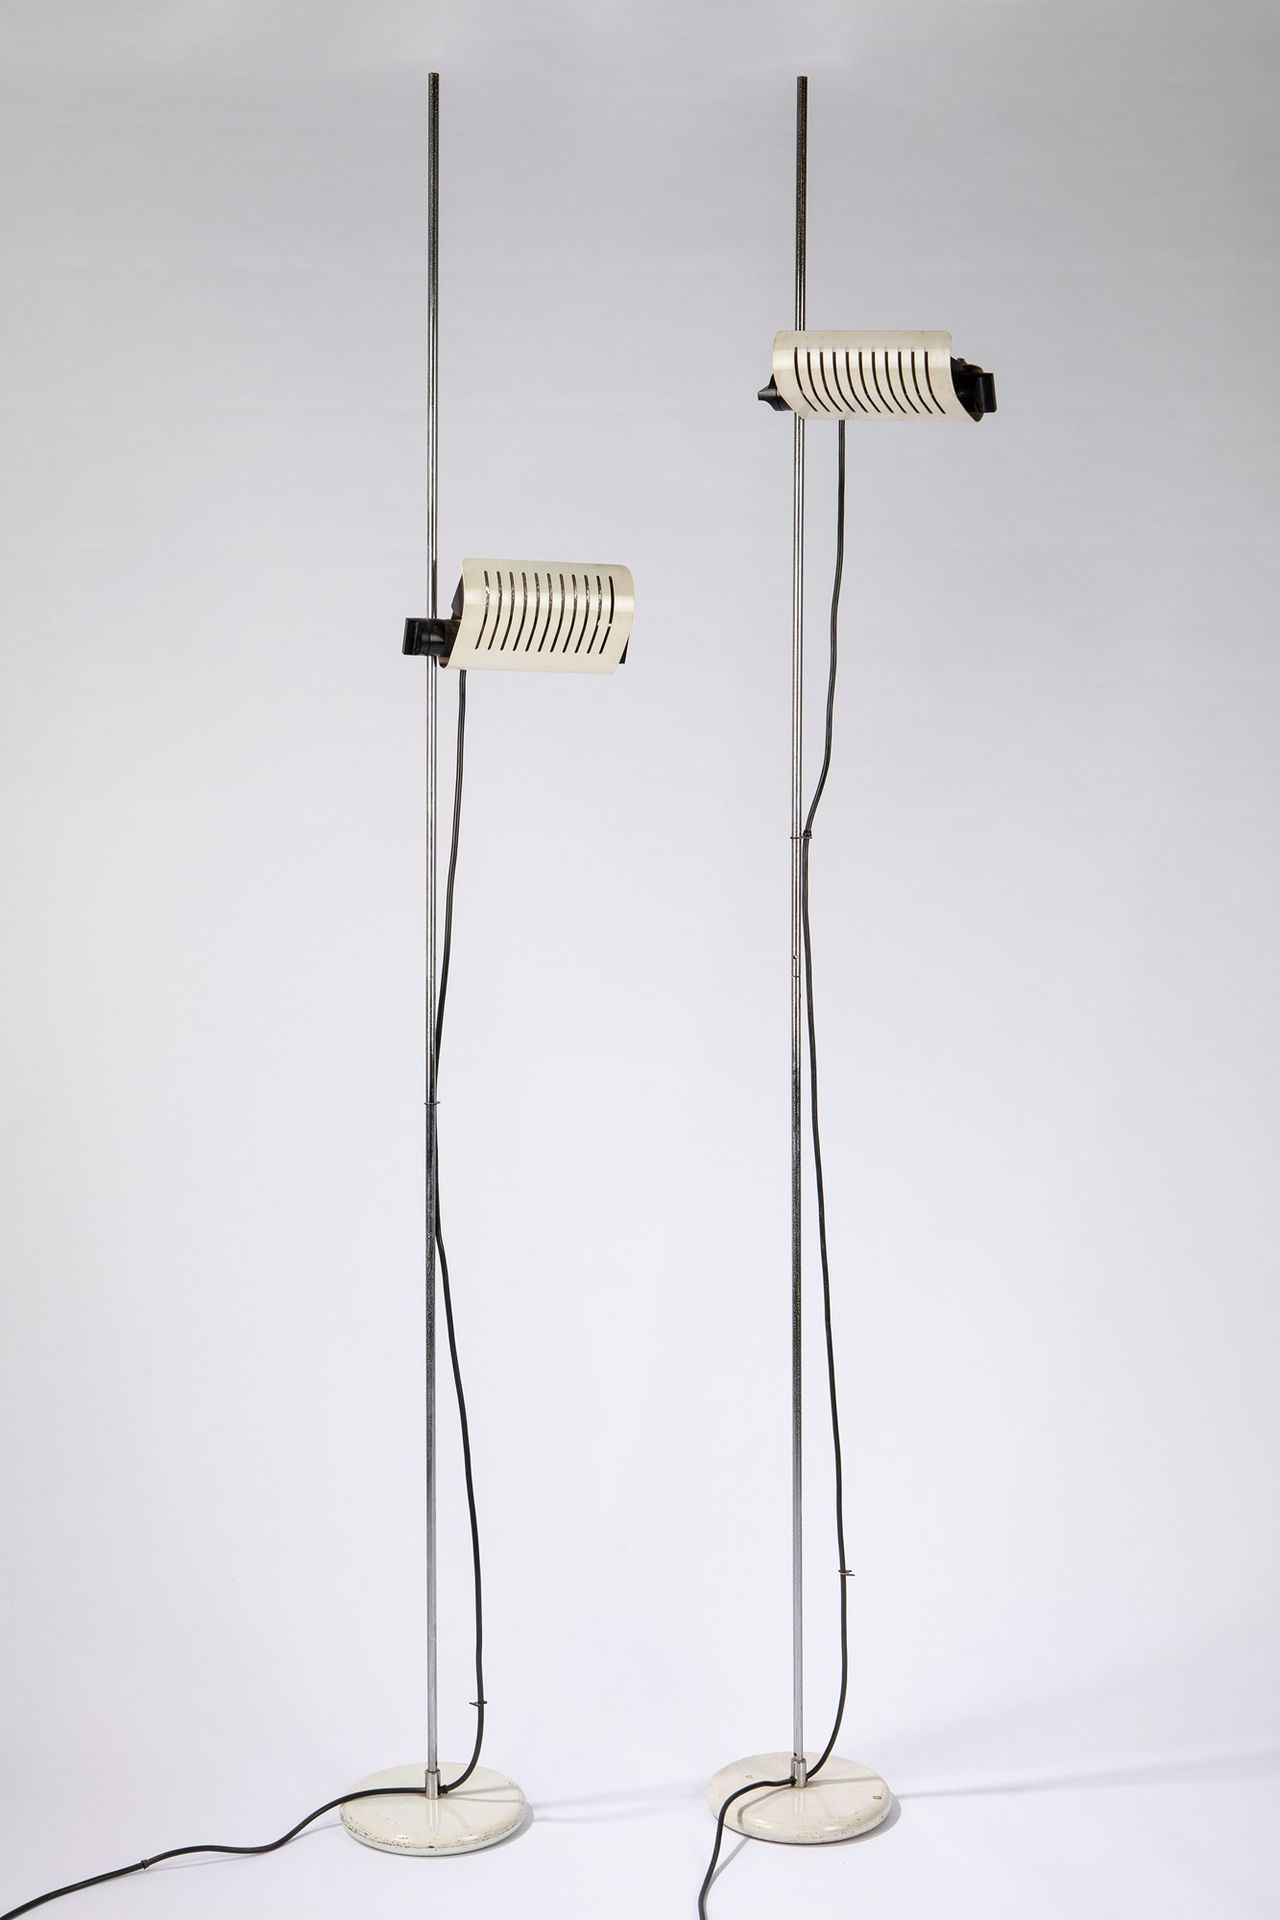 Colombo, Joe Dos lámparas de pie modelo 626, 1972

h 205 cm x 24 cm
Metal y meta&hellip;